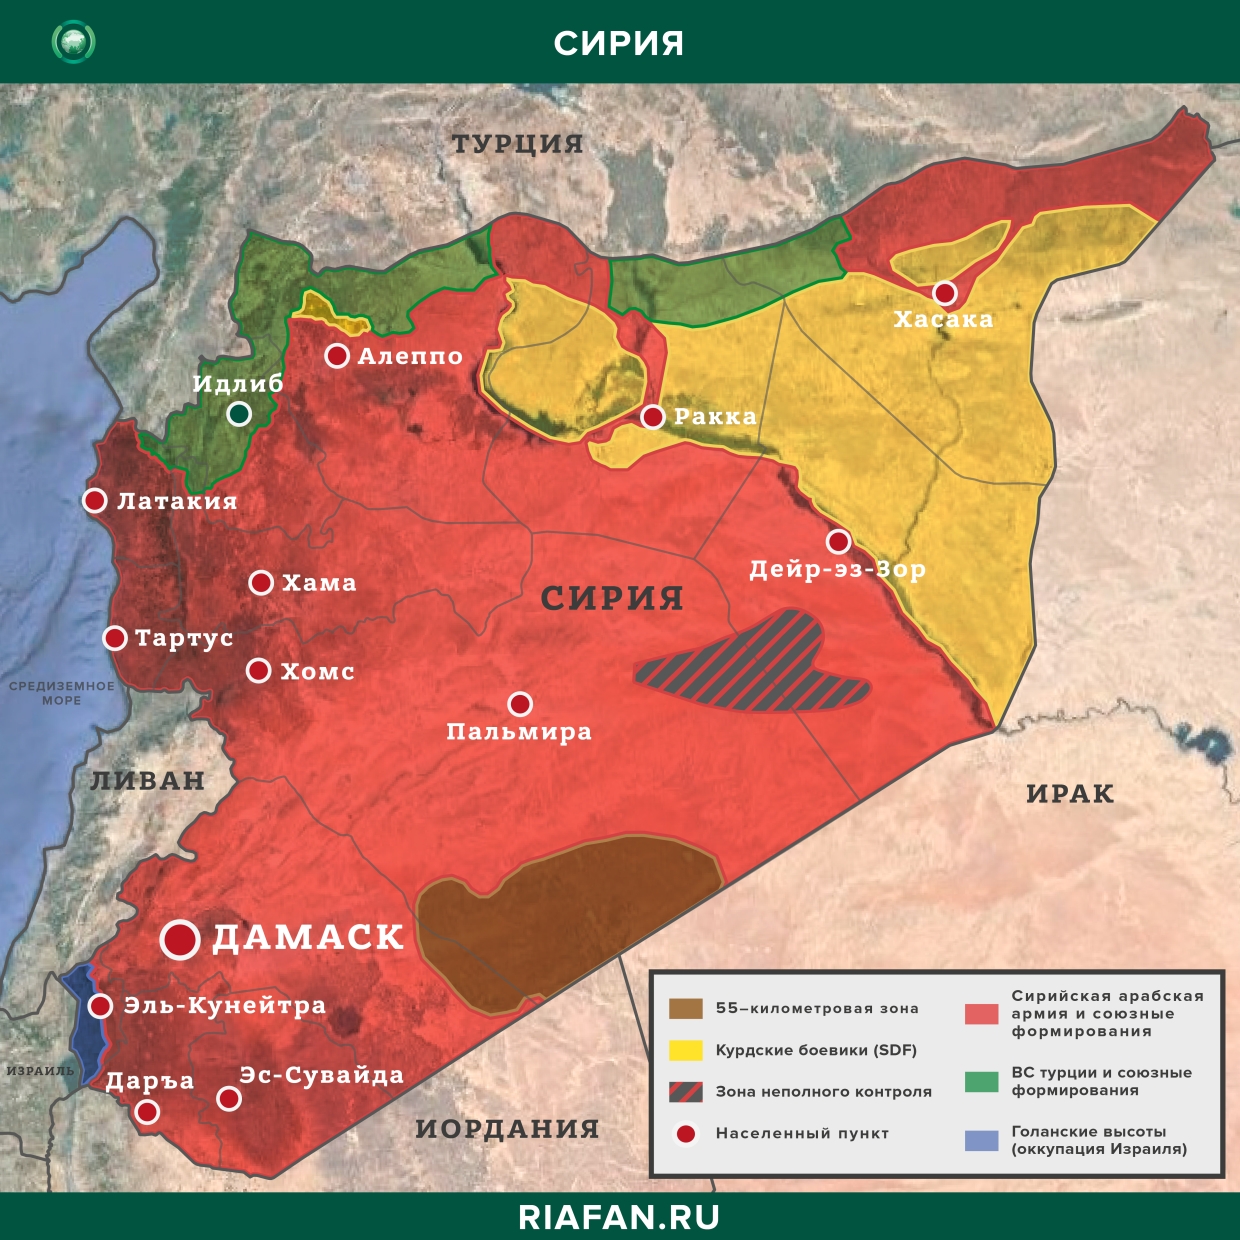 叙利亚结果 3 八月 06.00: 伊斯兰国武装分子在代尔祖尔杀死部落酋长